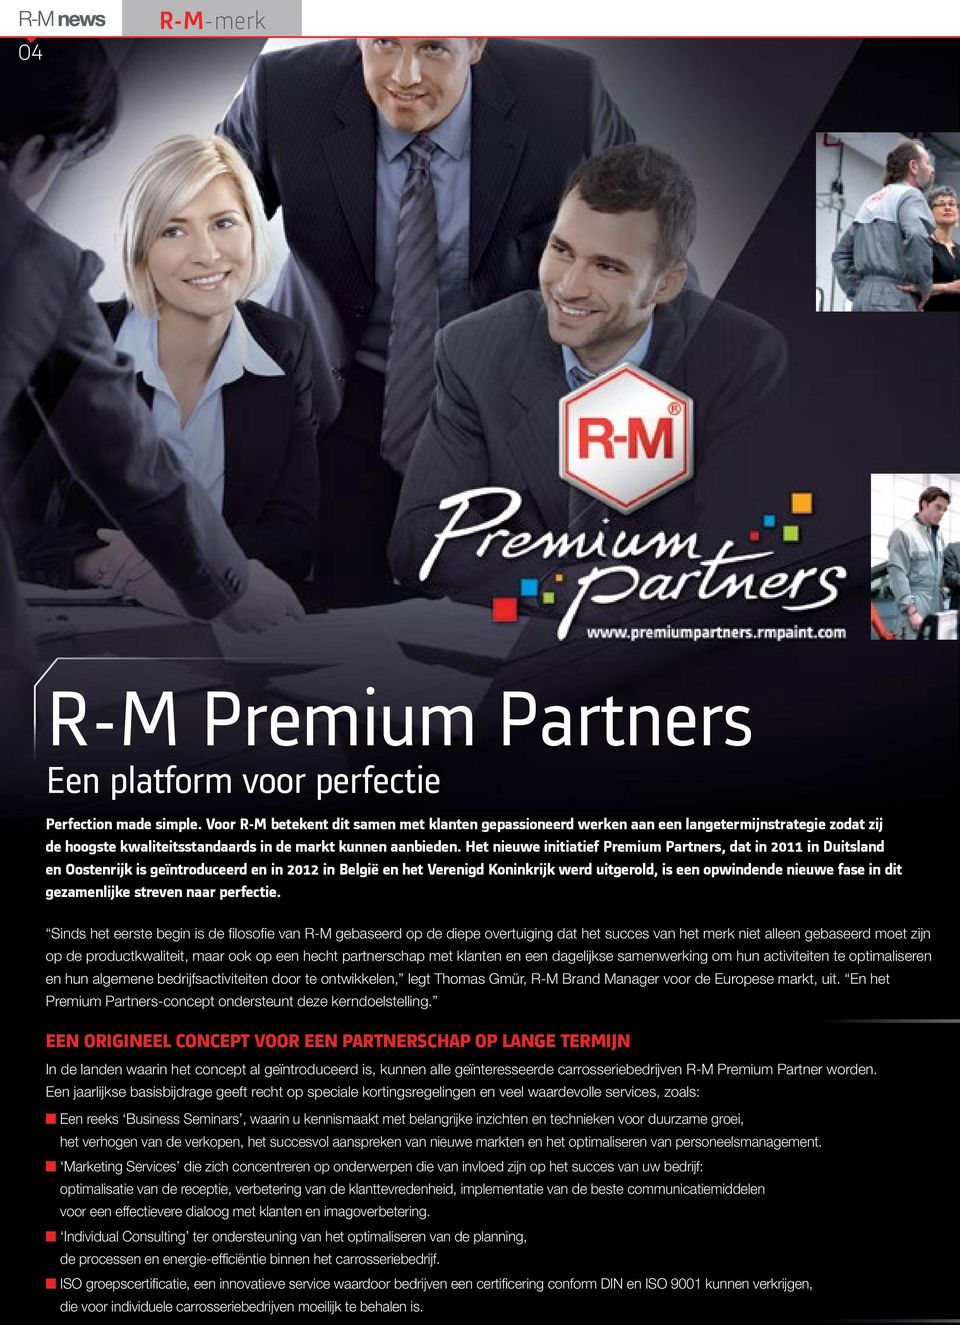 Het nieuwe initiatief Premium Partners, dat in 2011 in Duitsland en Oostenrijk is geïntroduceerd en in 2012 in België en het Verenigd Koninkrijk werd uitgerold, is een opwindende nieuwe fase in dit